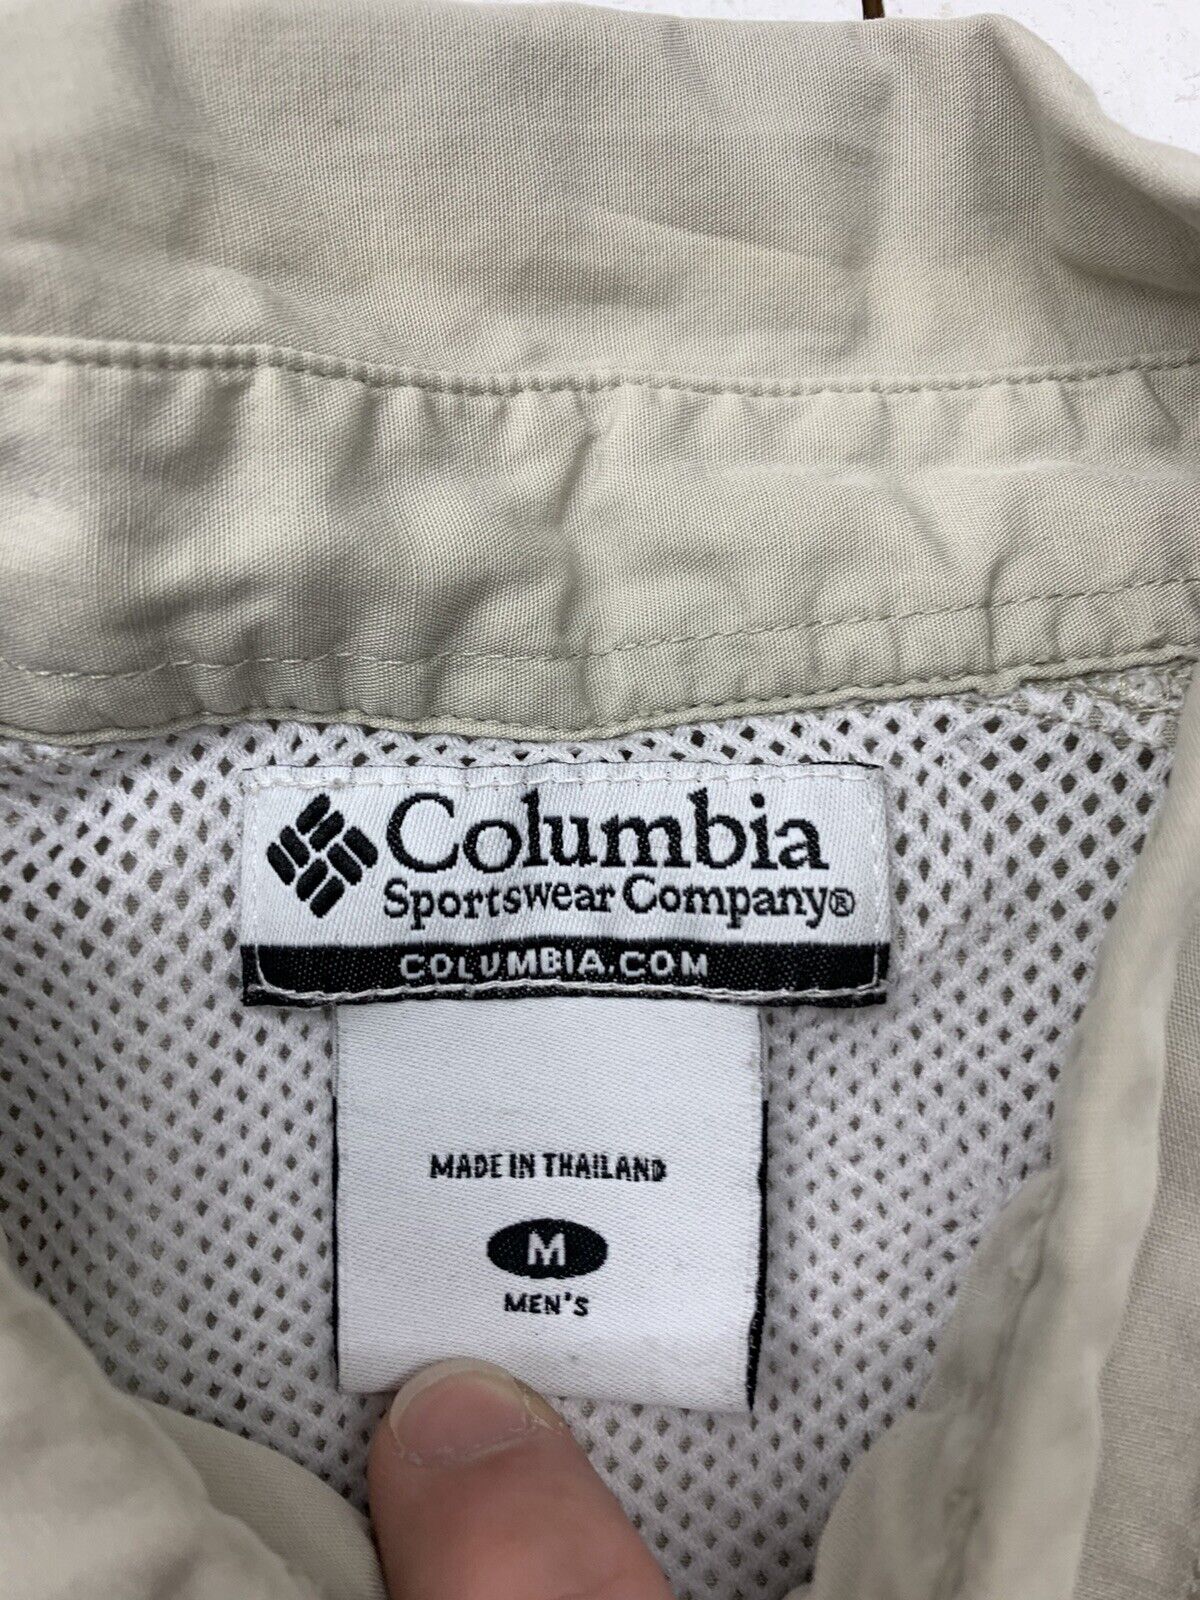 Columbia Mens Tan PFG Button Up Shirt Size Medium - beyond exchange